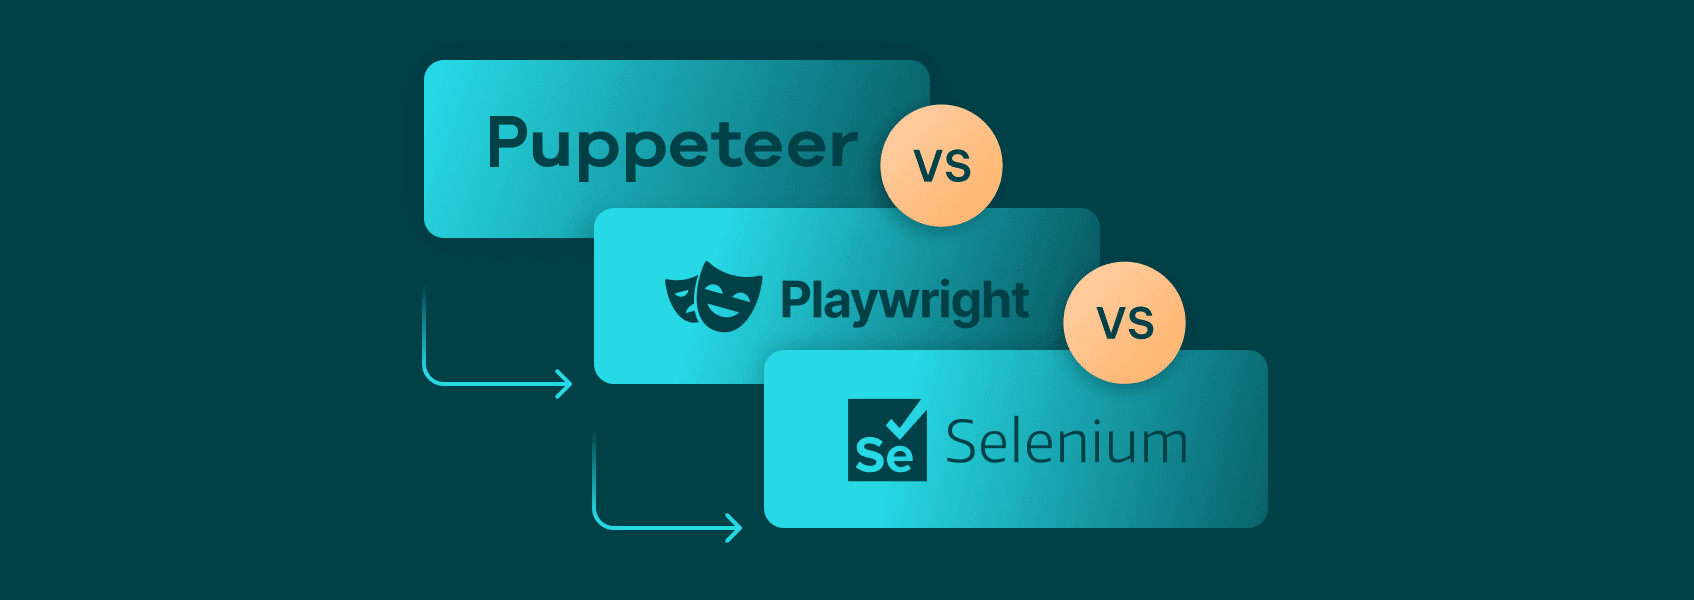 Puppeteer vs Playwright vs Selenium